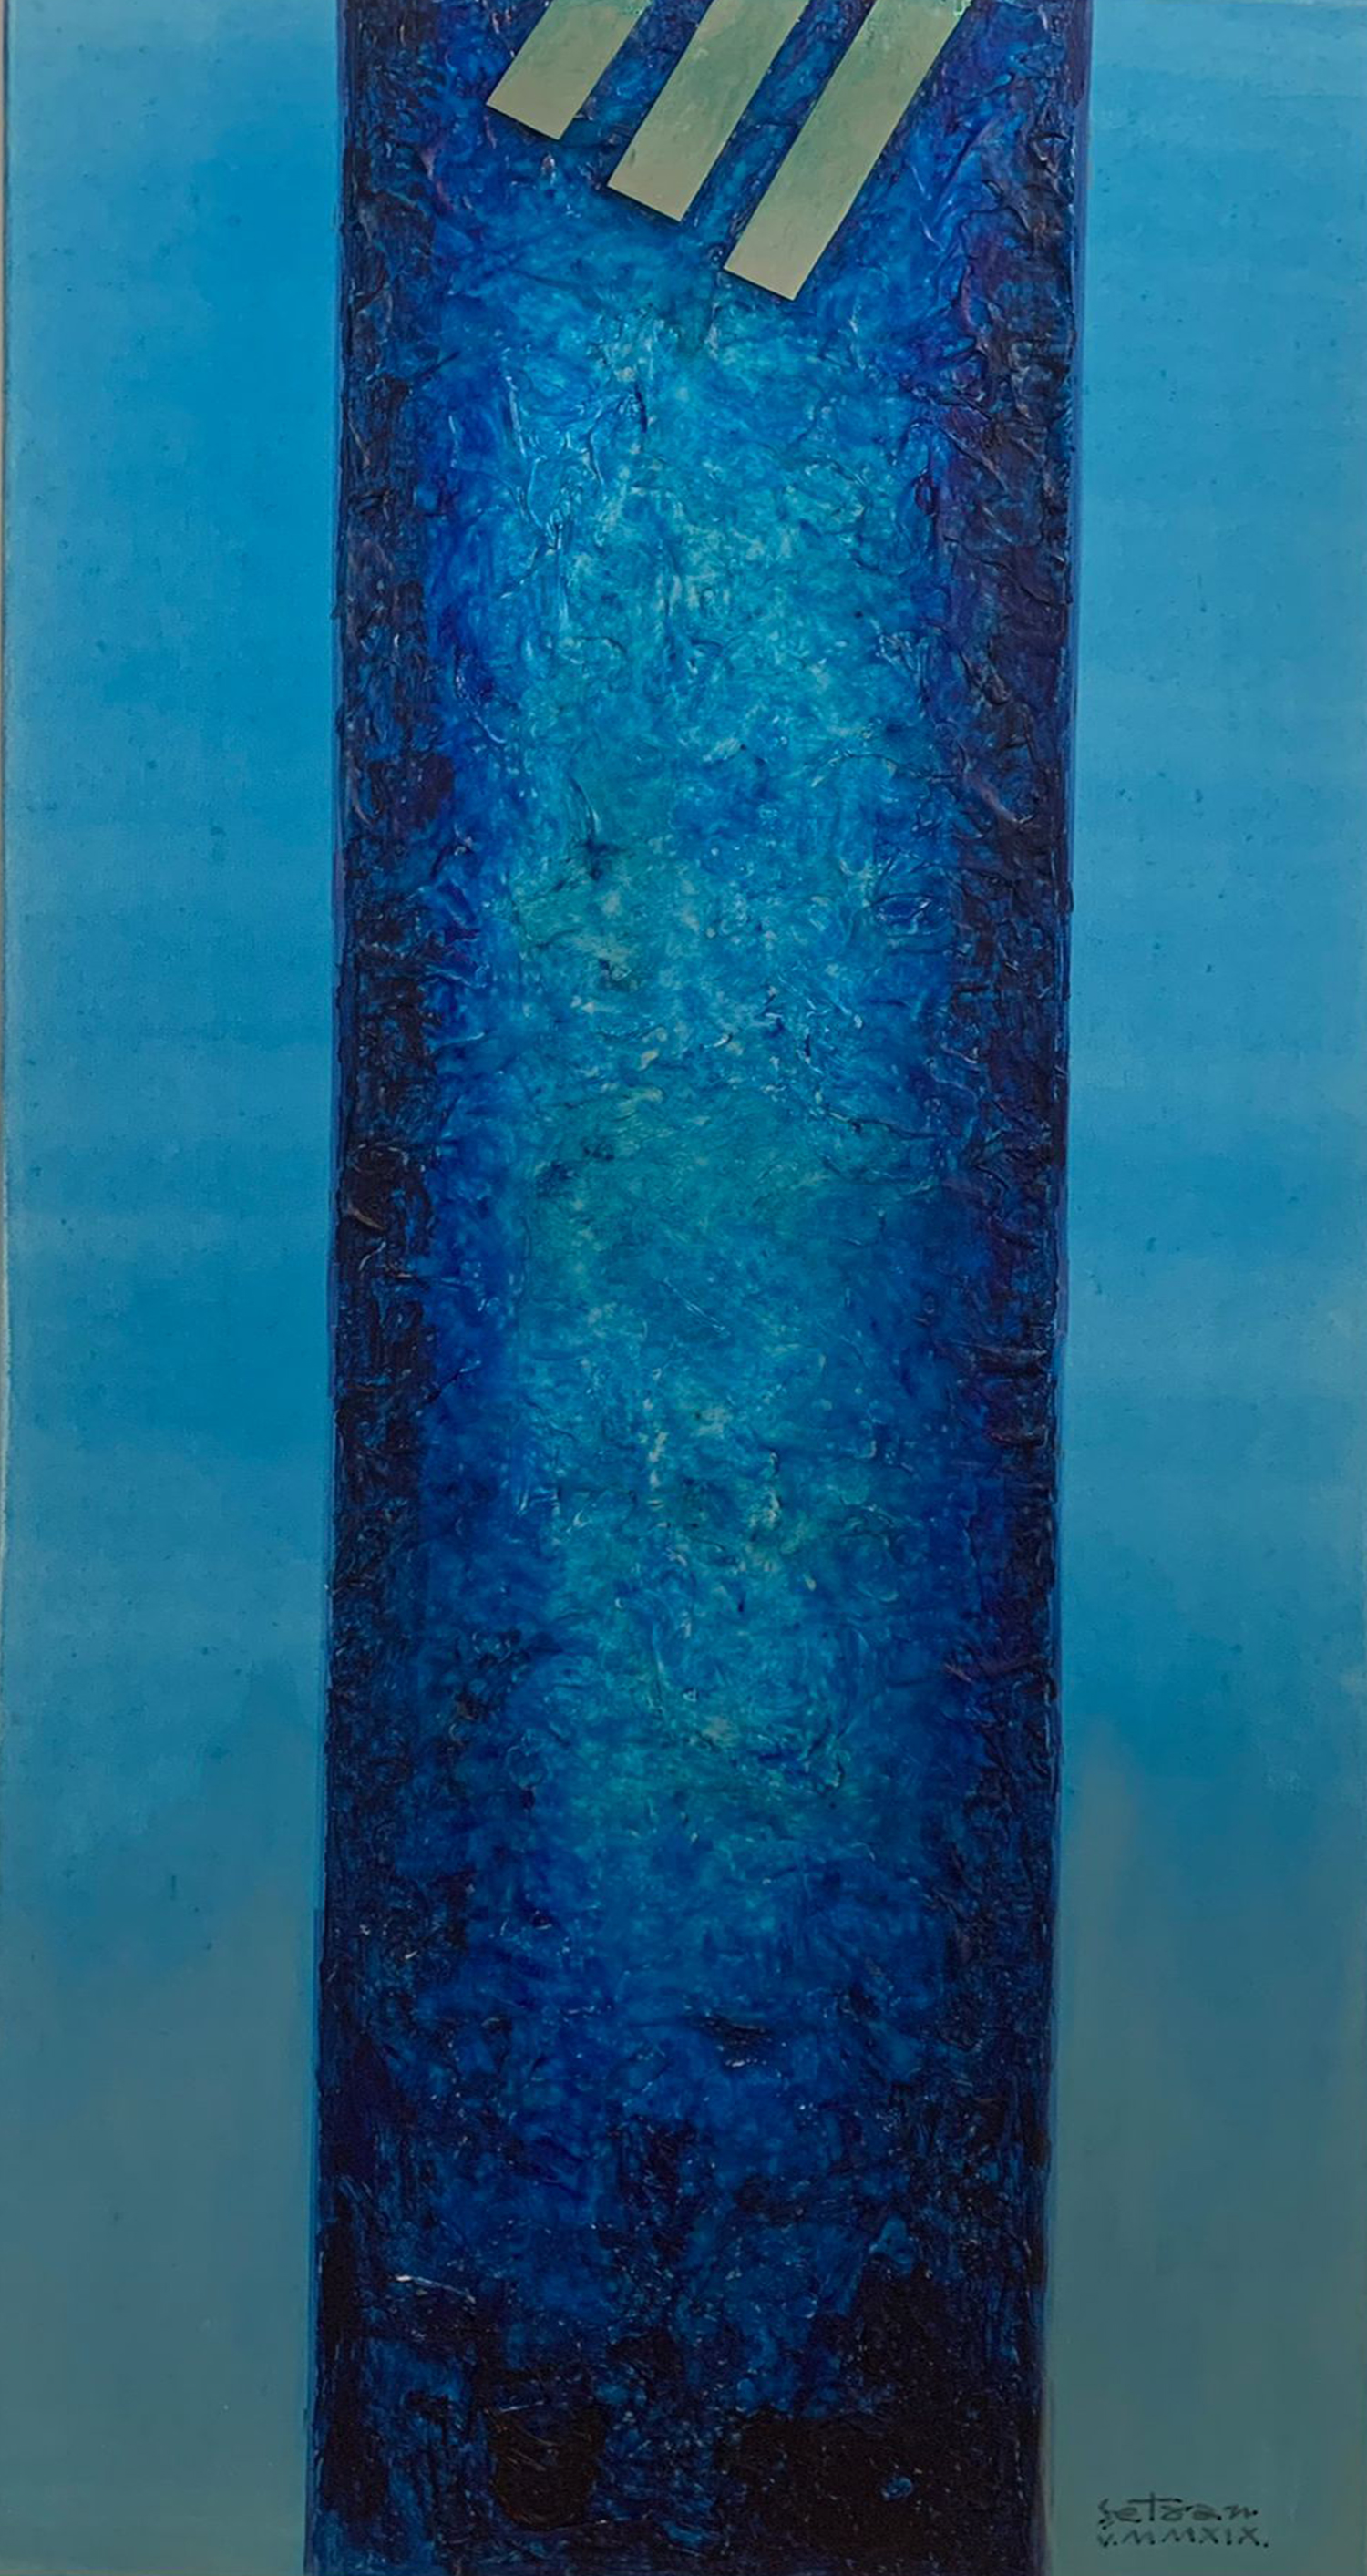 Vladimir Setran Vladimir Șetran- VI.MMXIX, acrylic on canvas, 70 x 150 cm, 2019